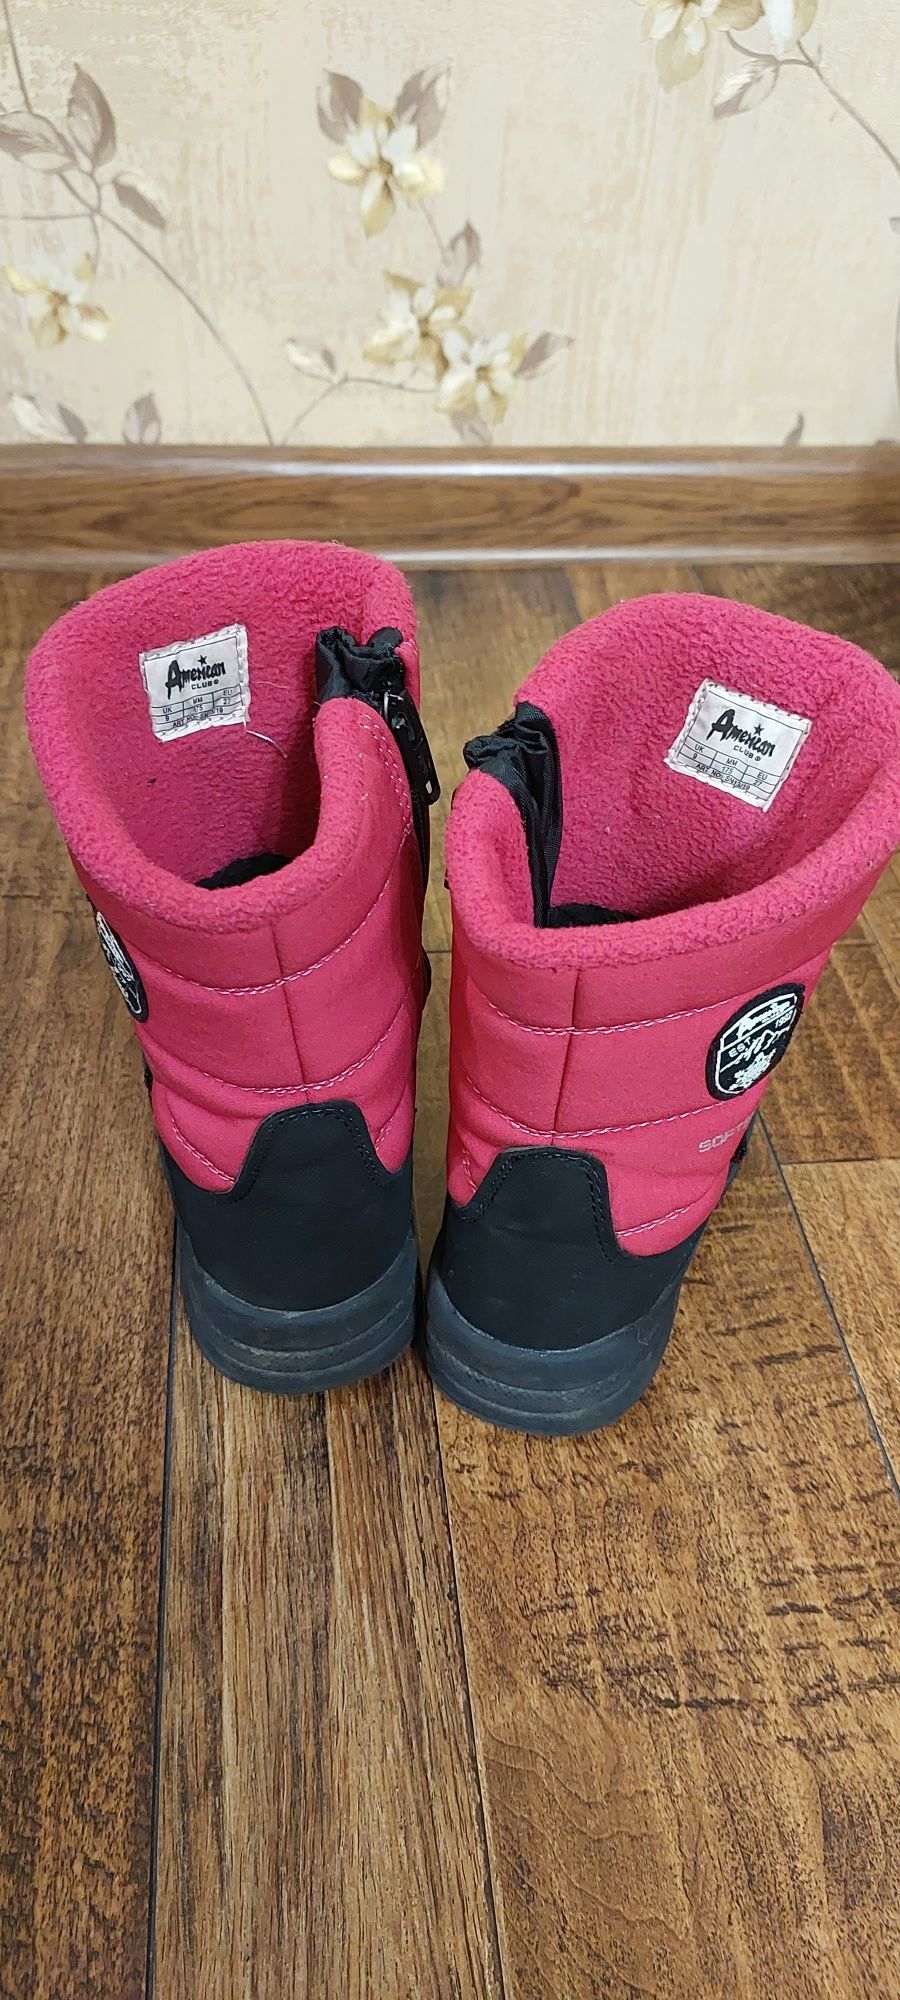 Дитячі зимові термо ботинки American club